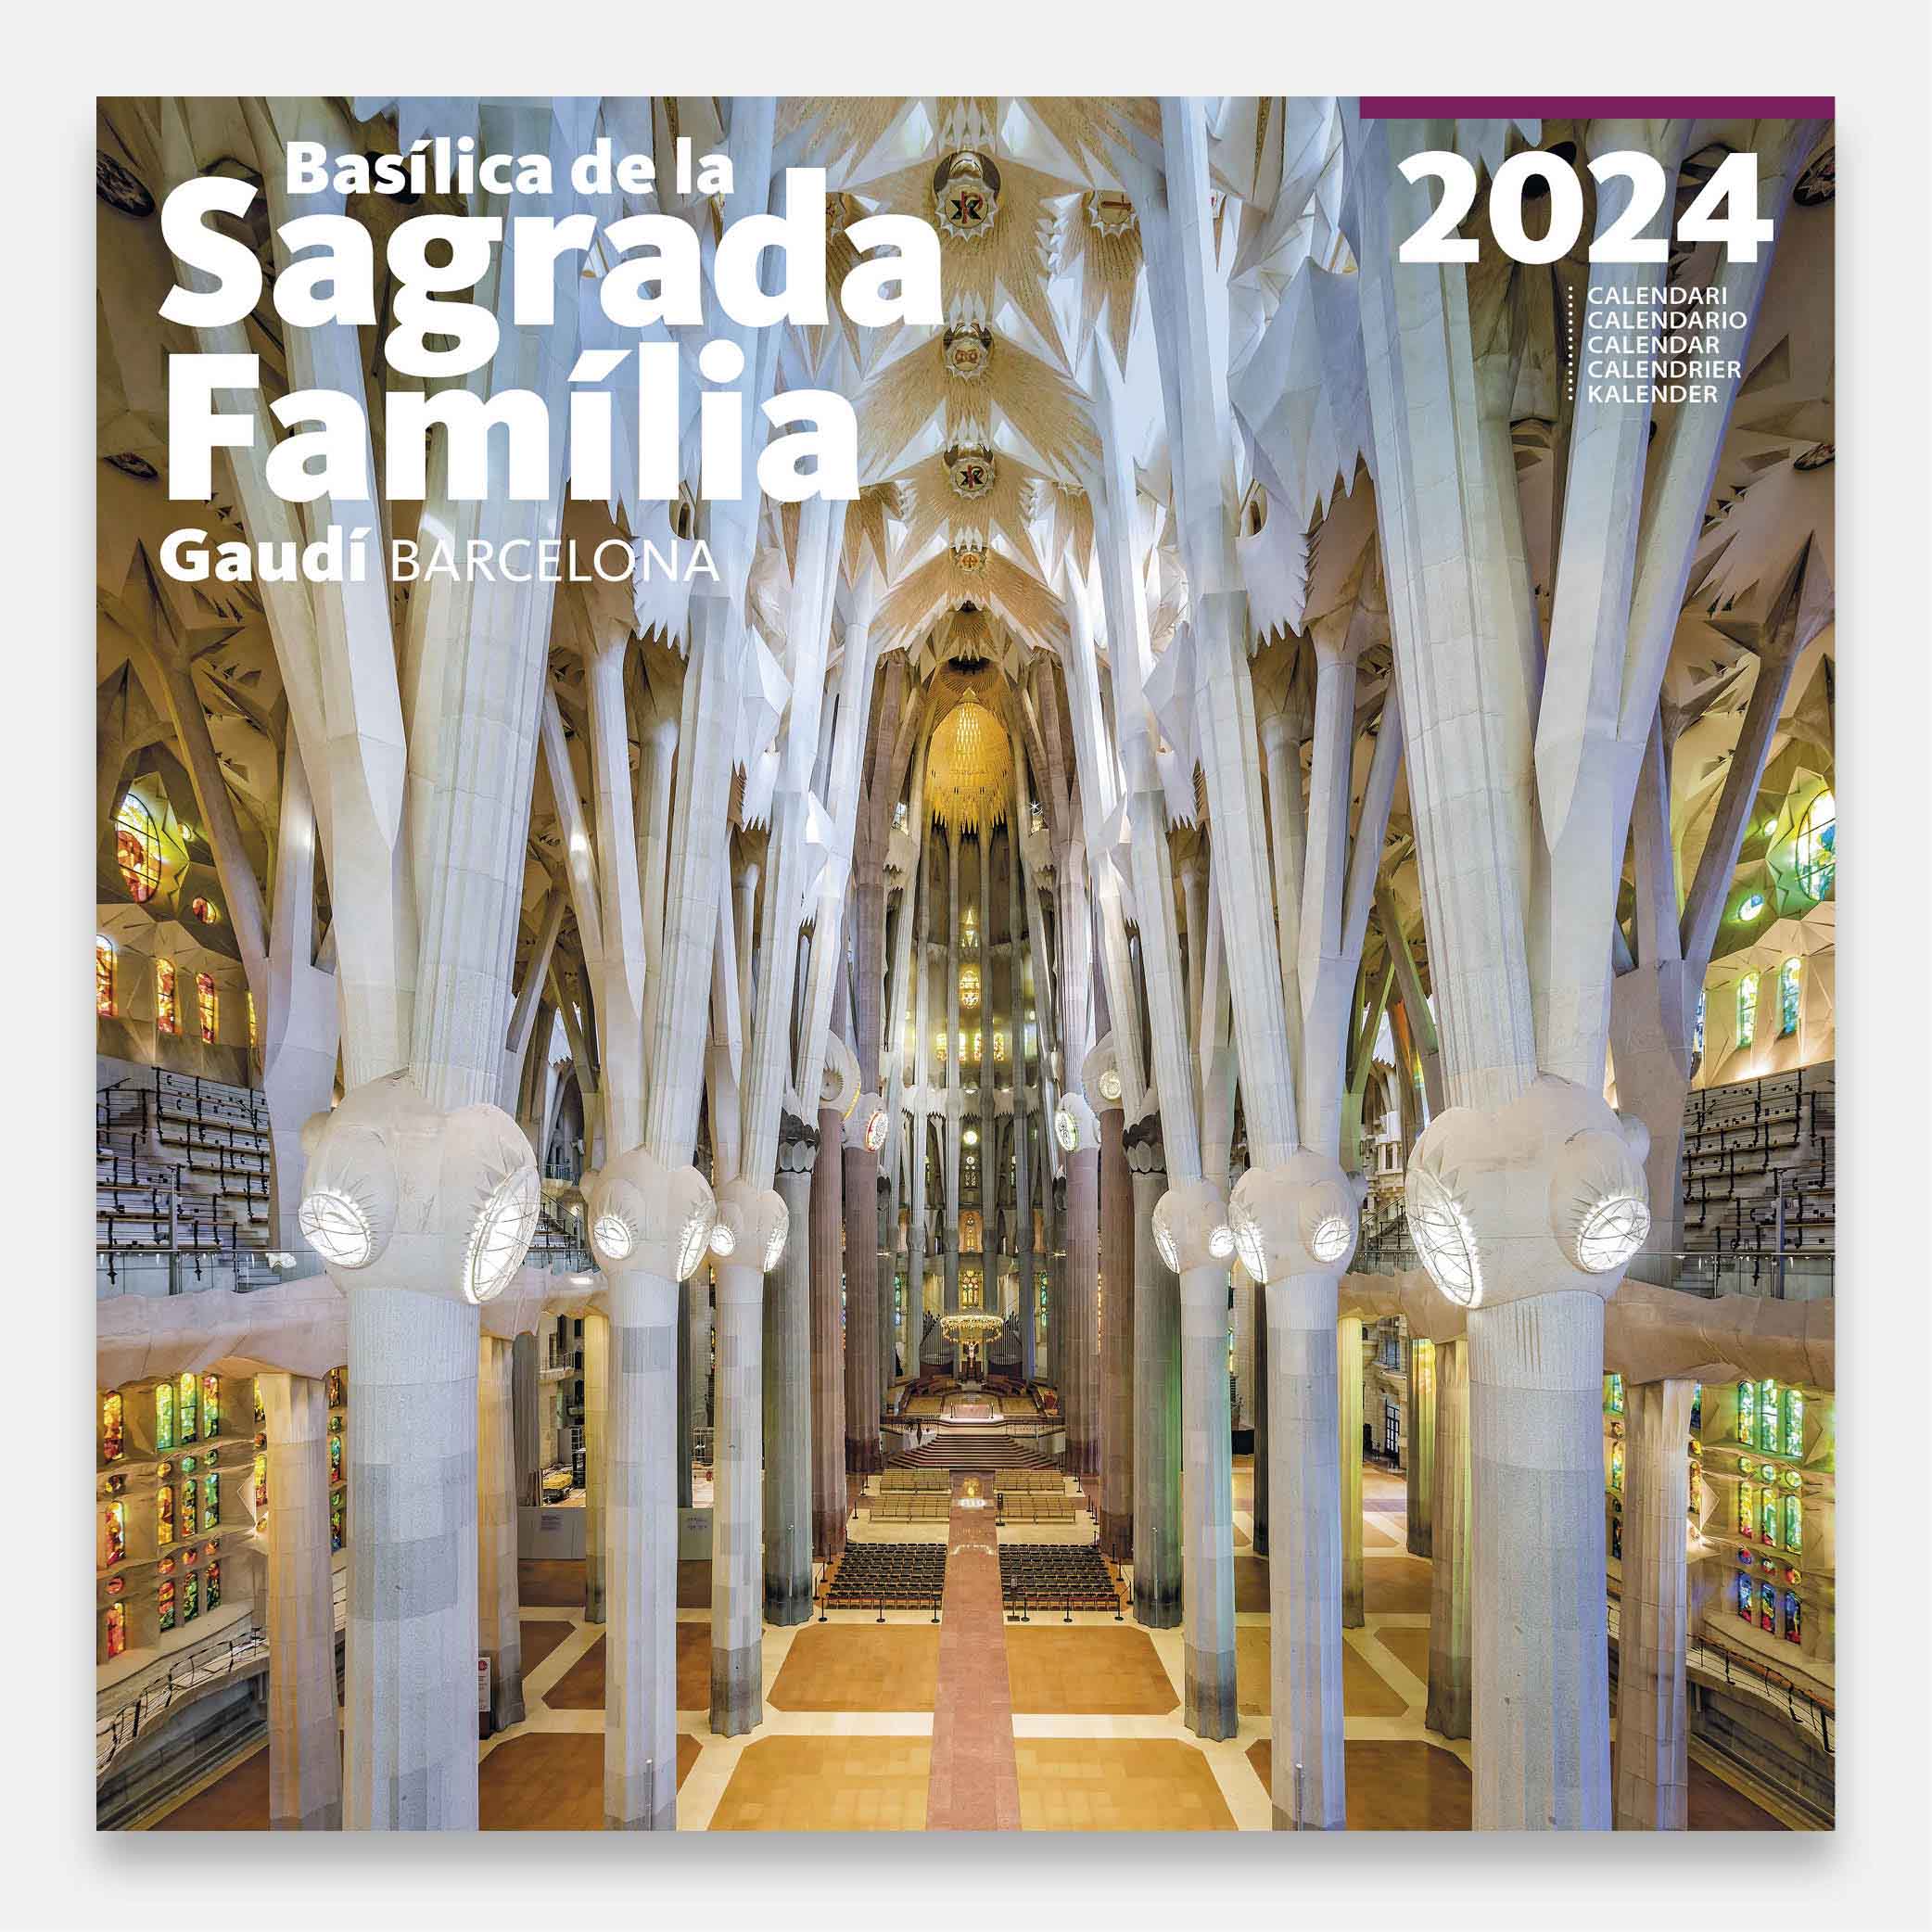 Calendario 2024 Basílica de la Sagrada Família 24sfg2 calendario pared 2024 gaudi sagrada familia